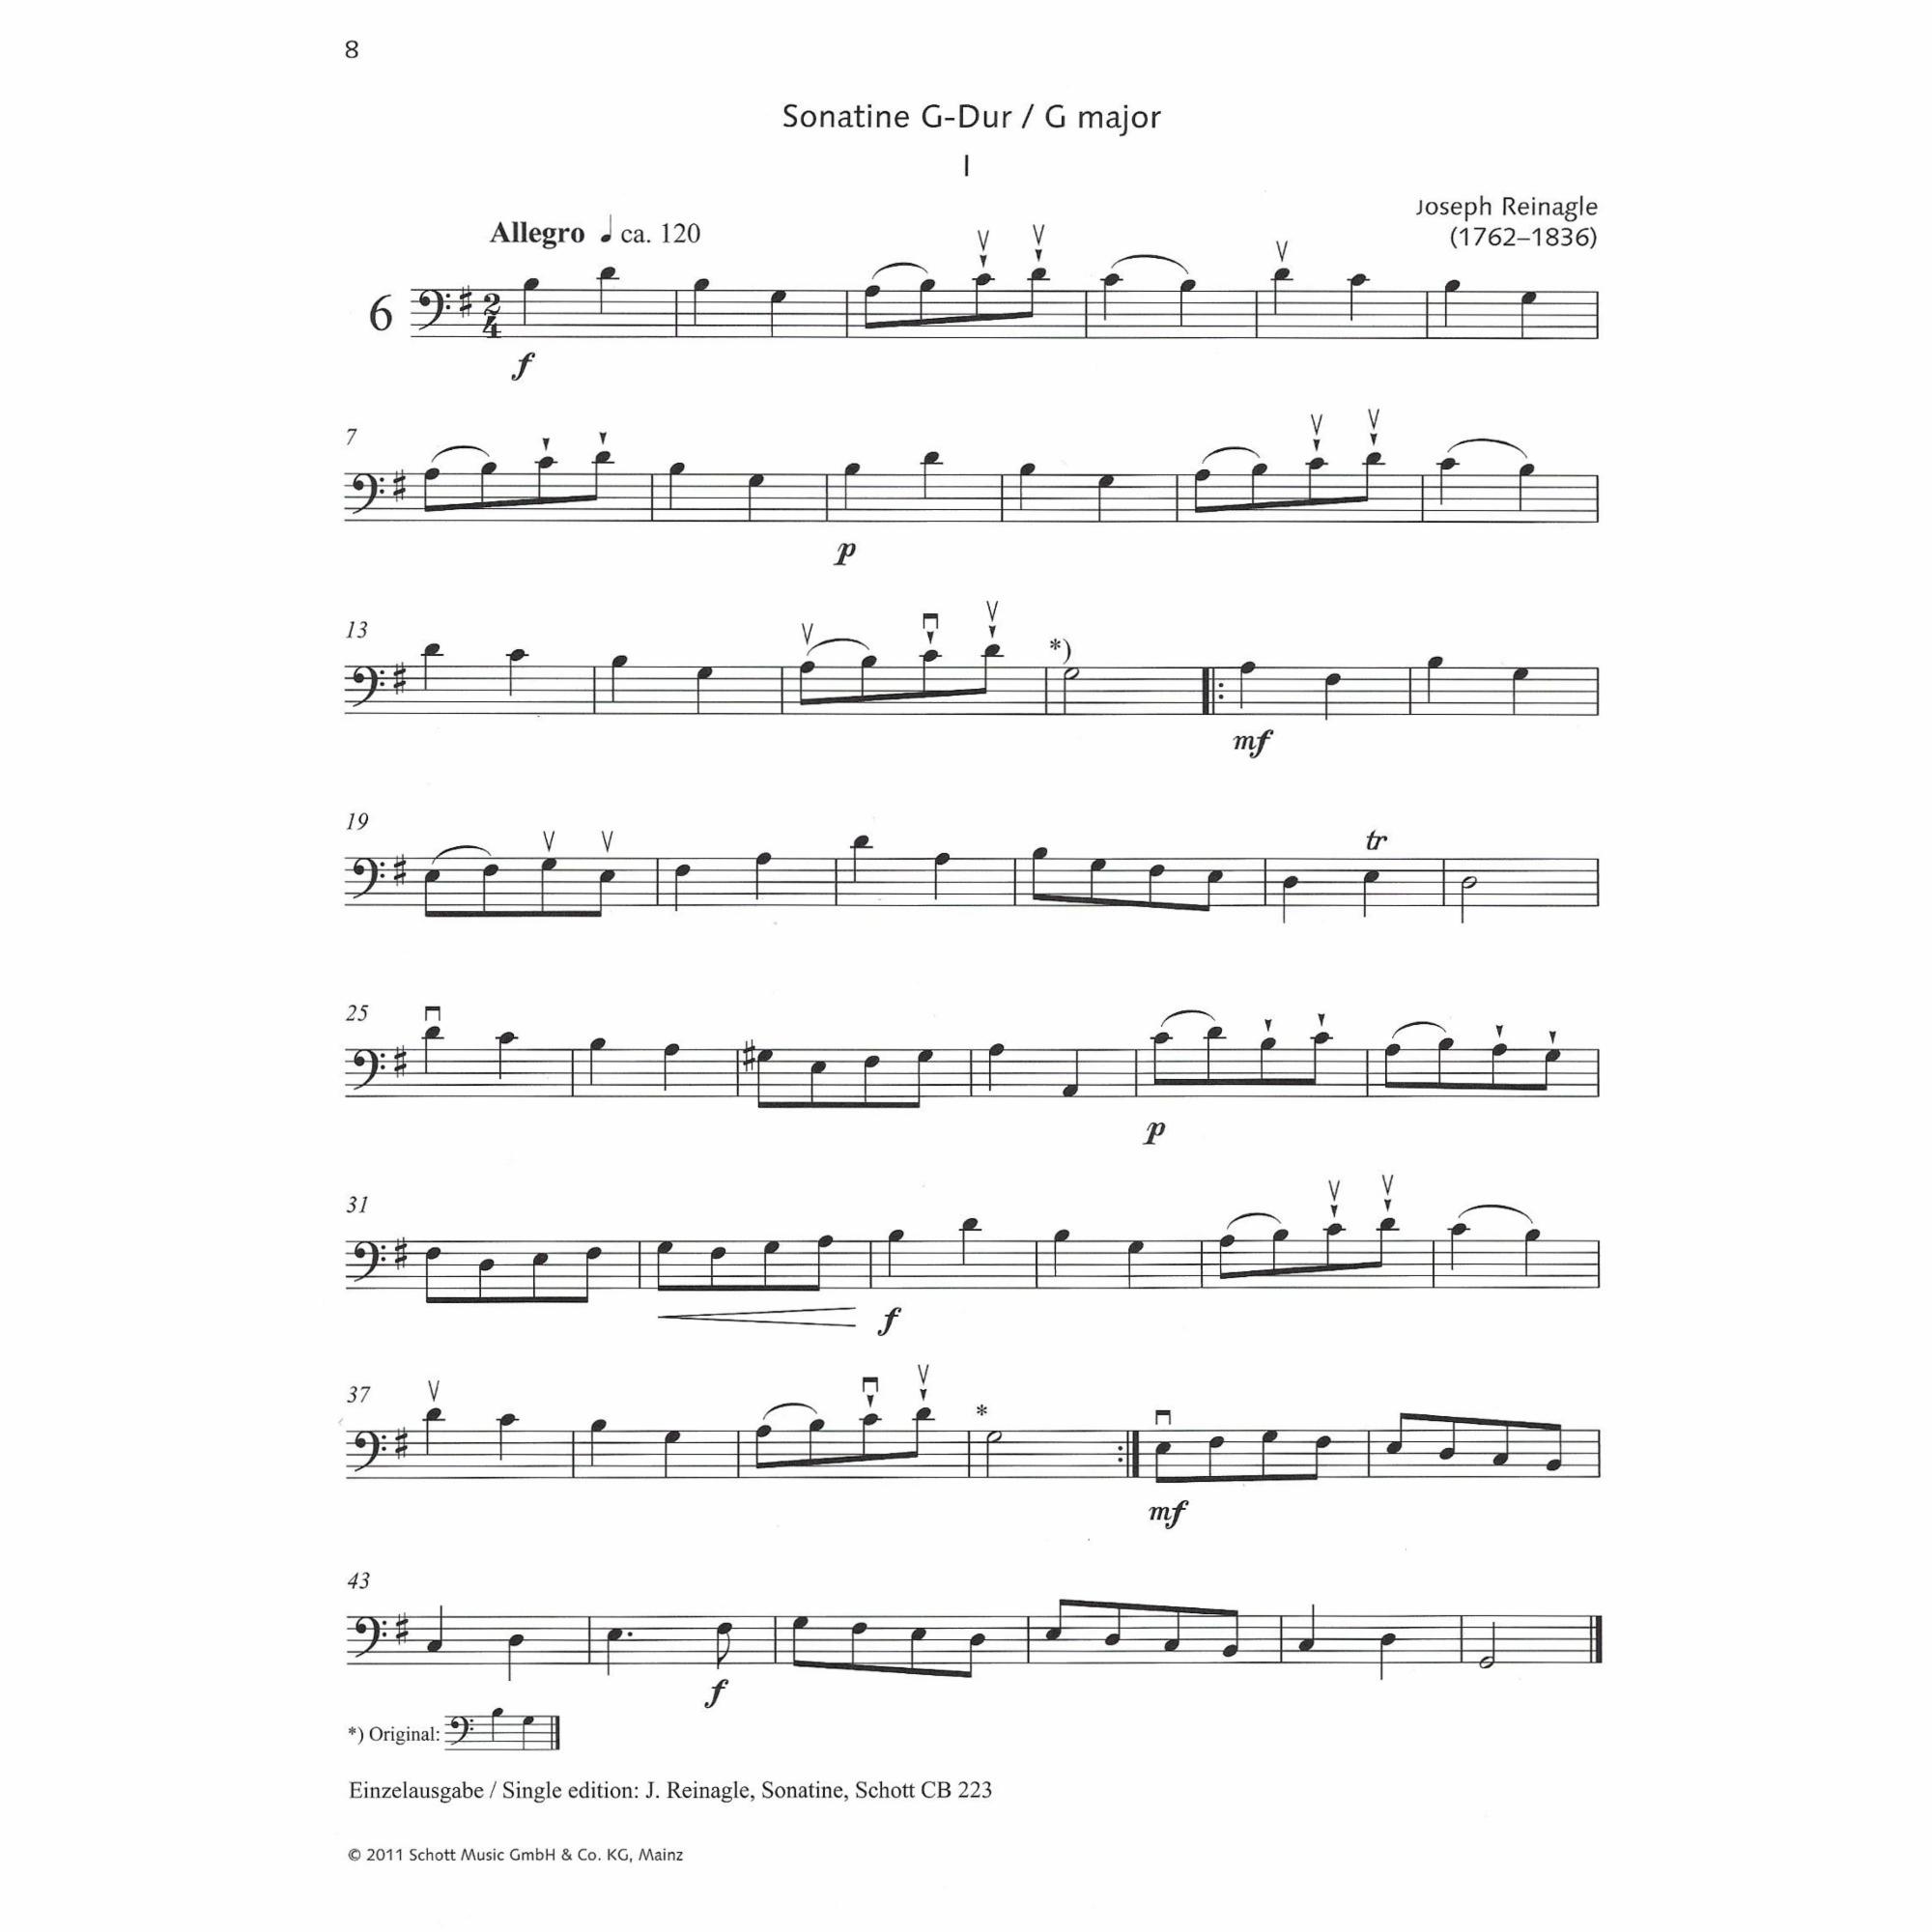 Sample: Cello (Pg. 8)